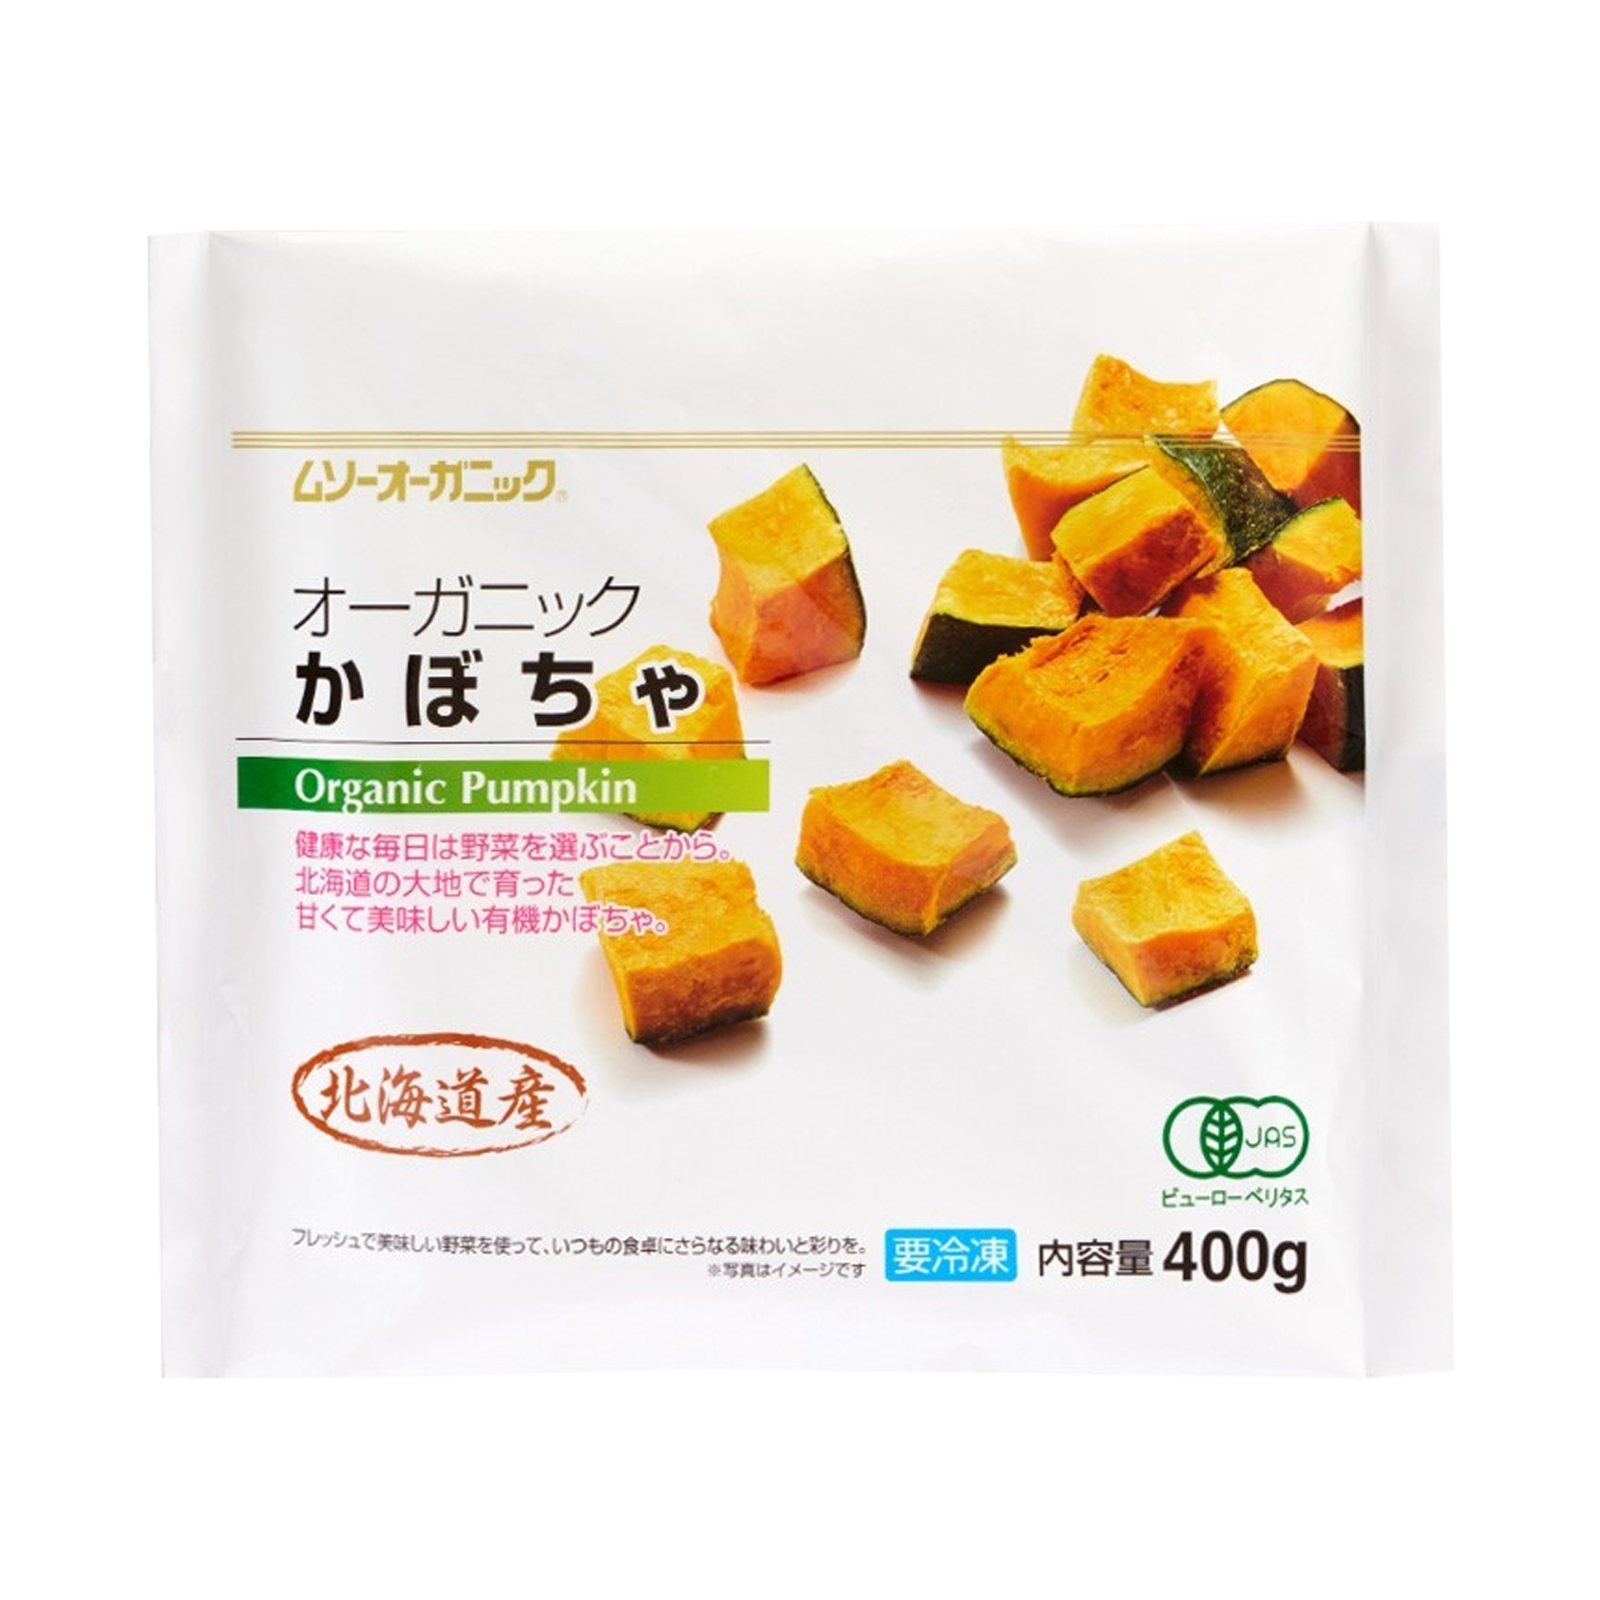 有機 JAS オーガニック 冷凍 かぼちゃ 北海道産 化学物質不使用 (1.2kg) ホライズンファームズ